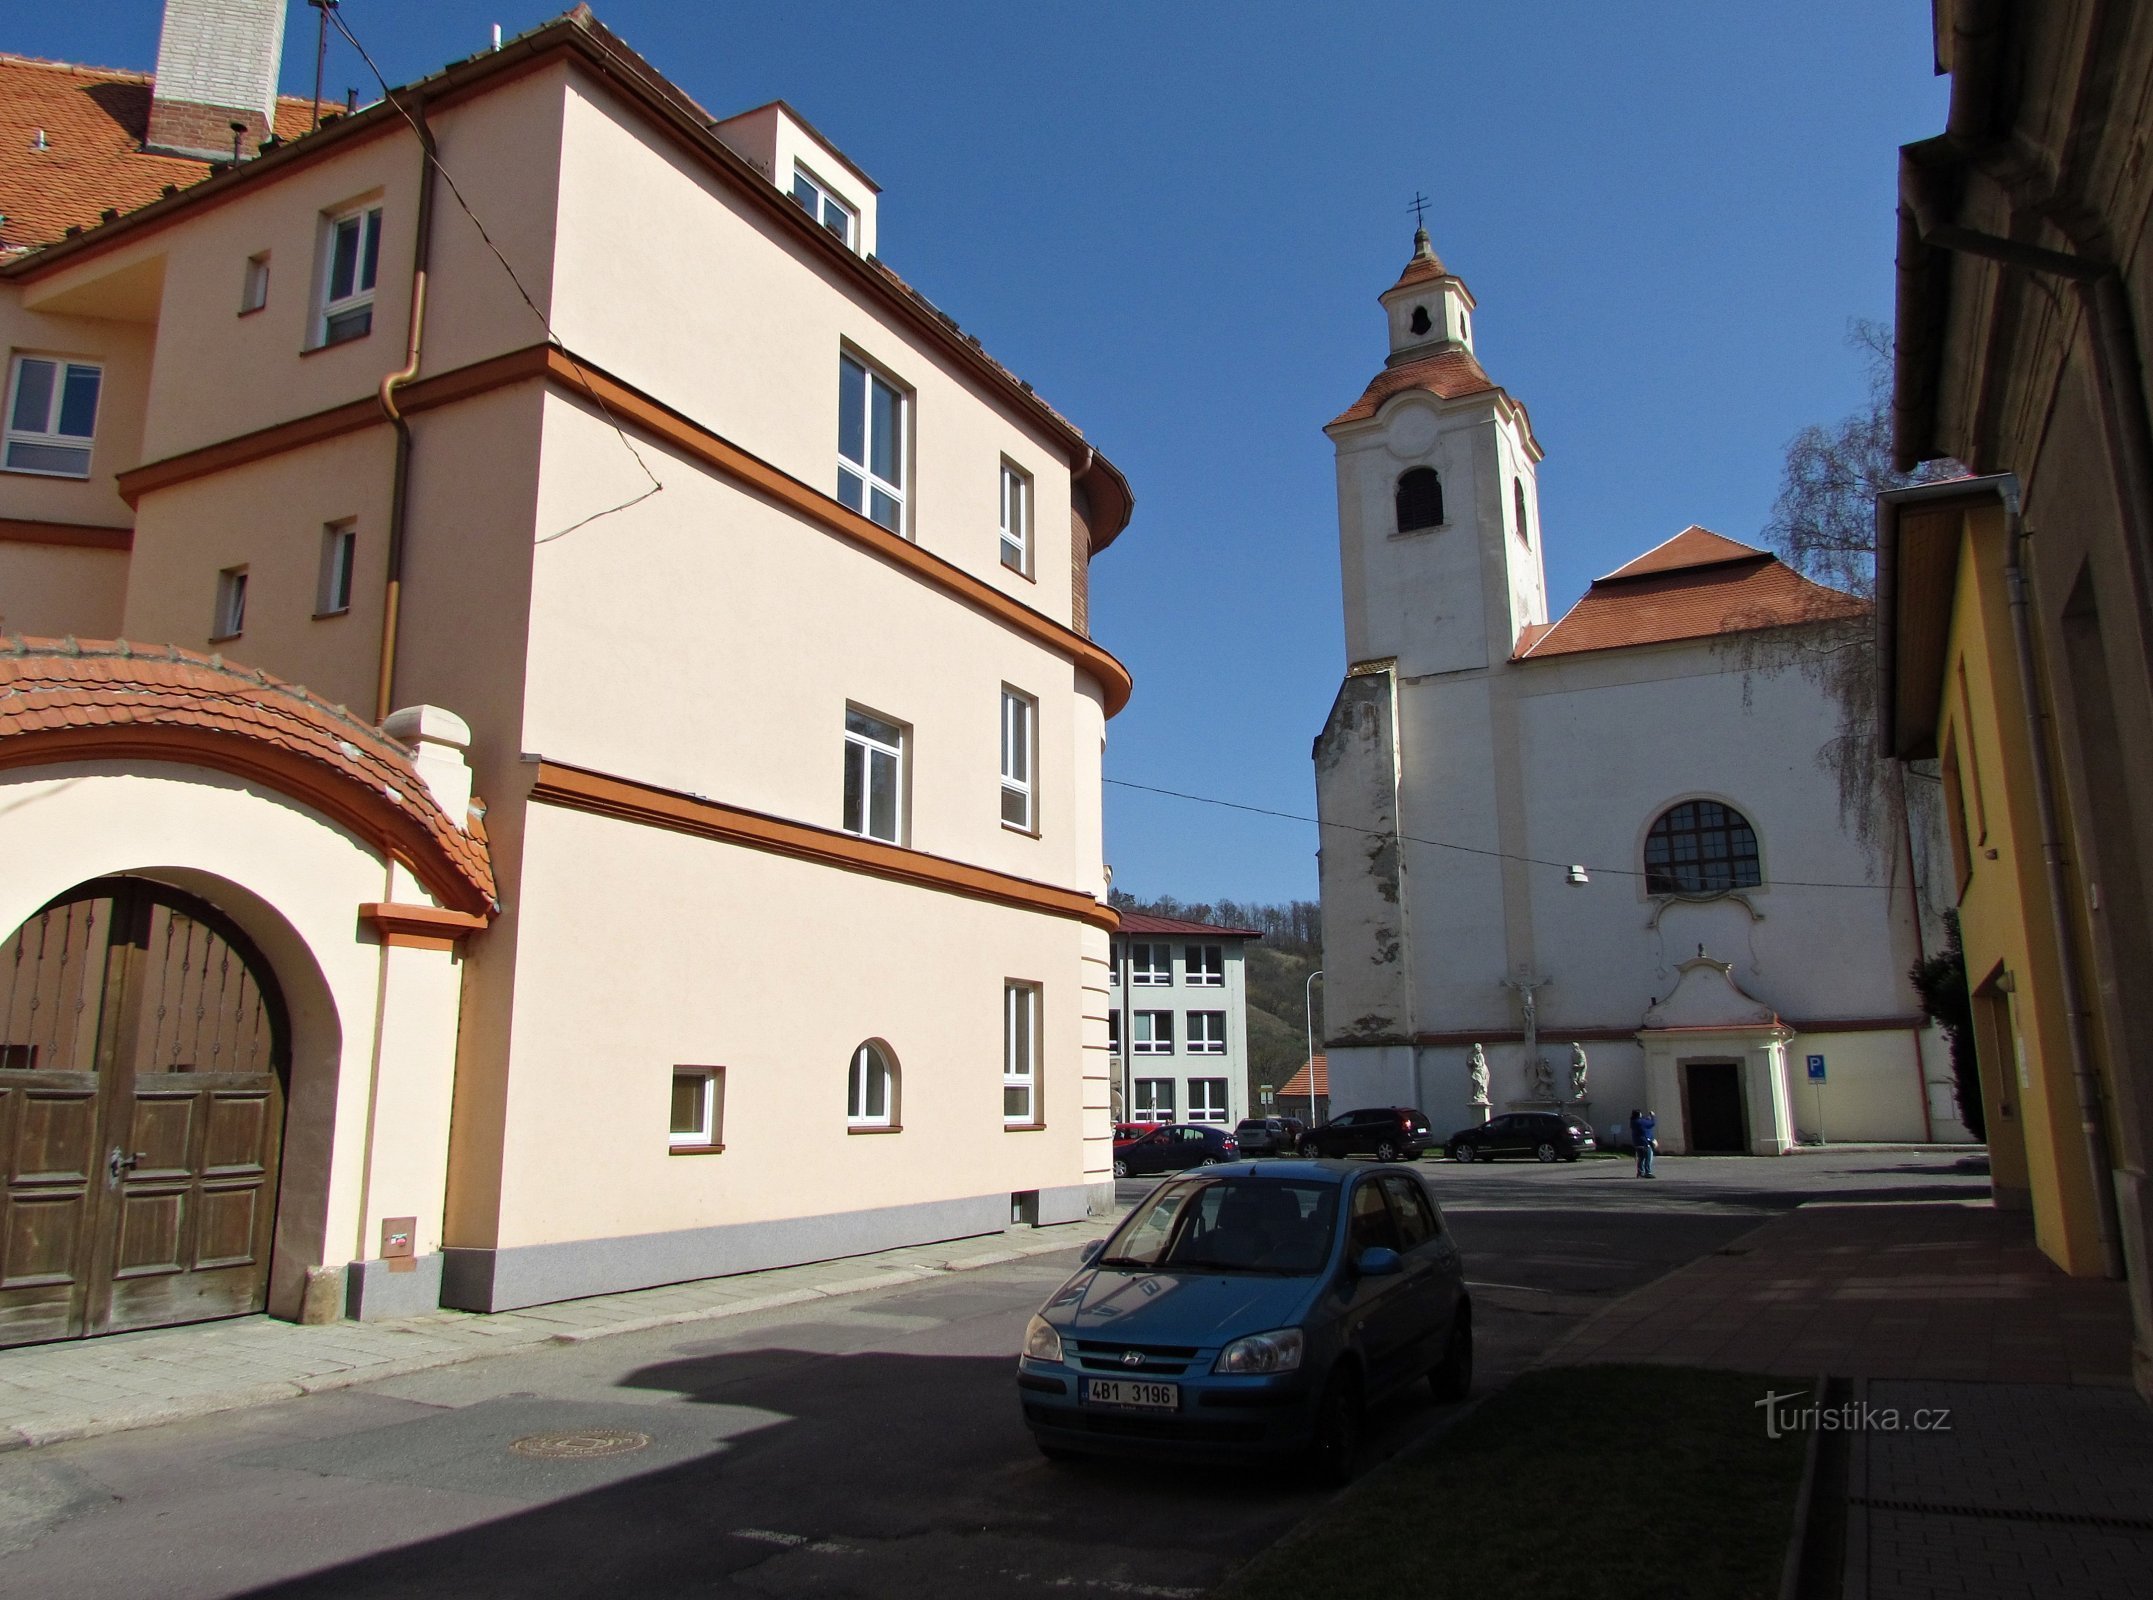 Moravský Krumlov - St. Bartholomew's church and former monastery